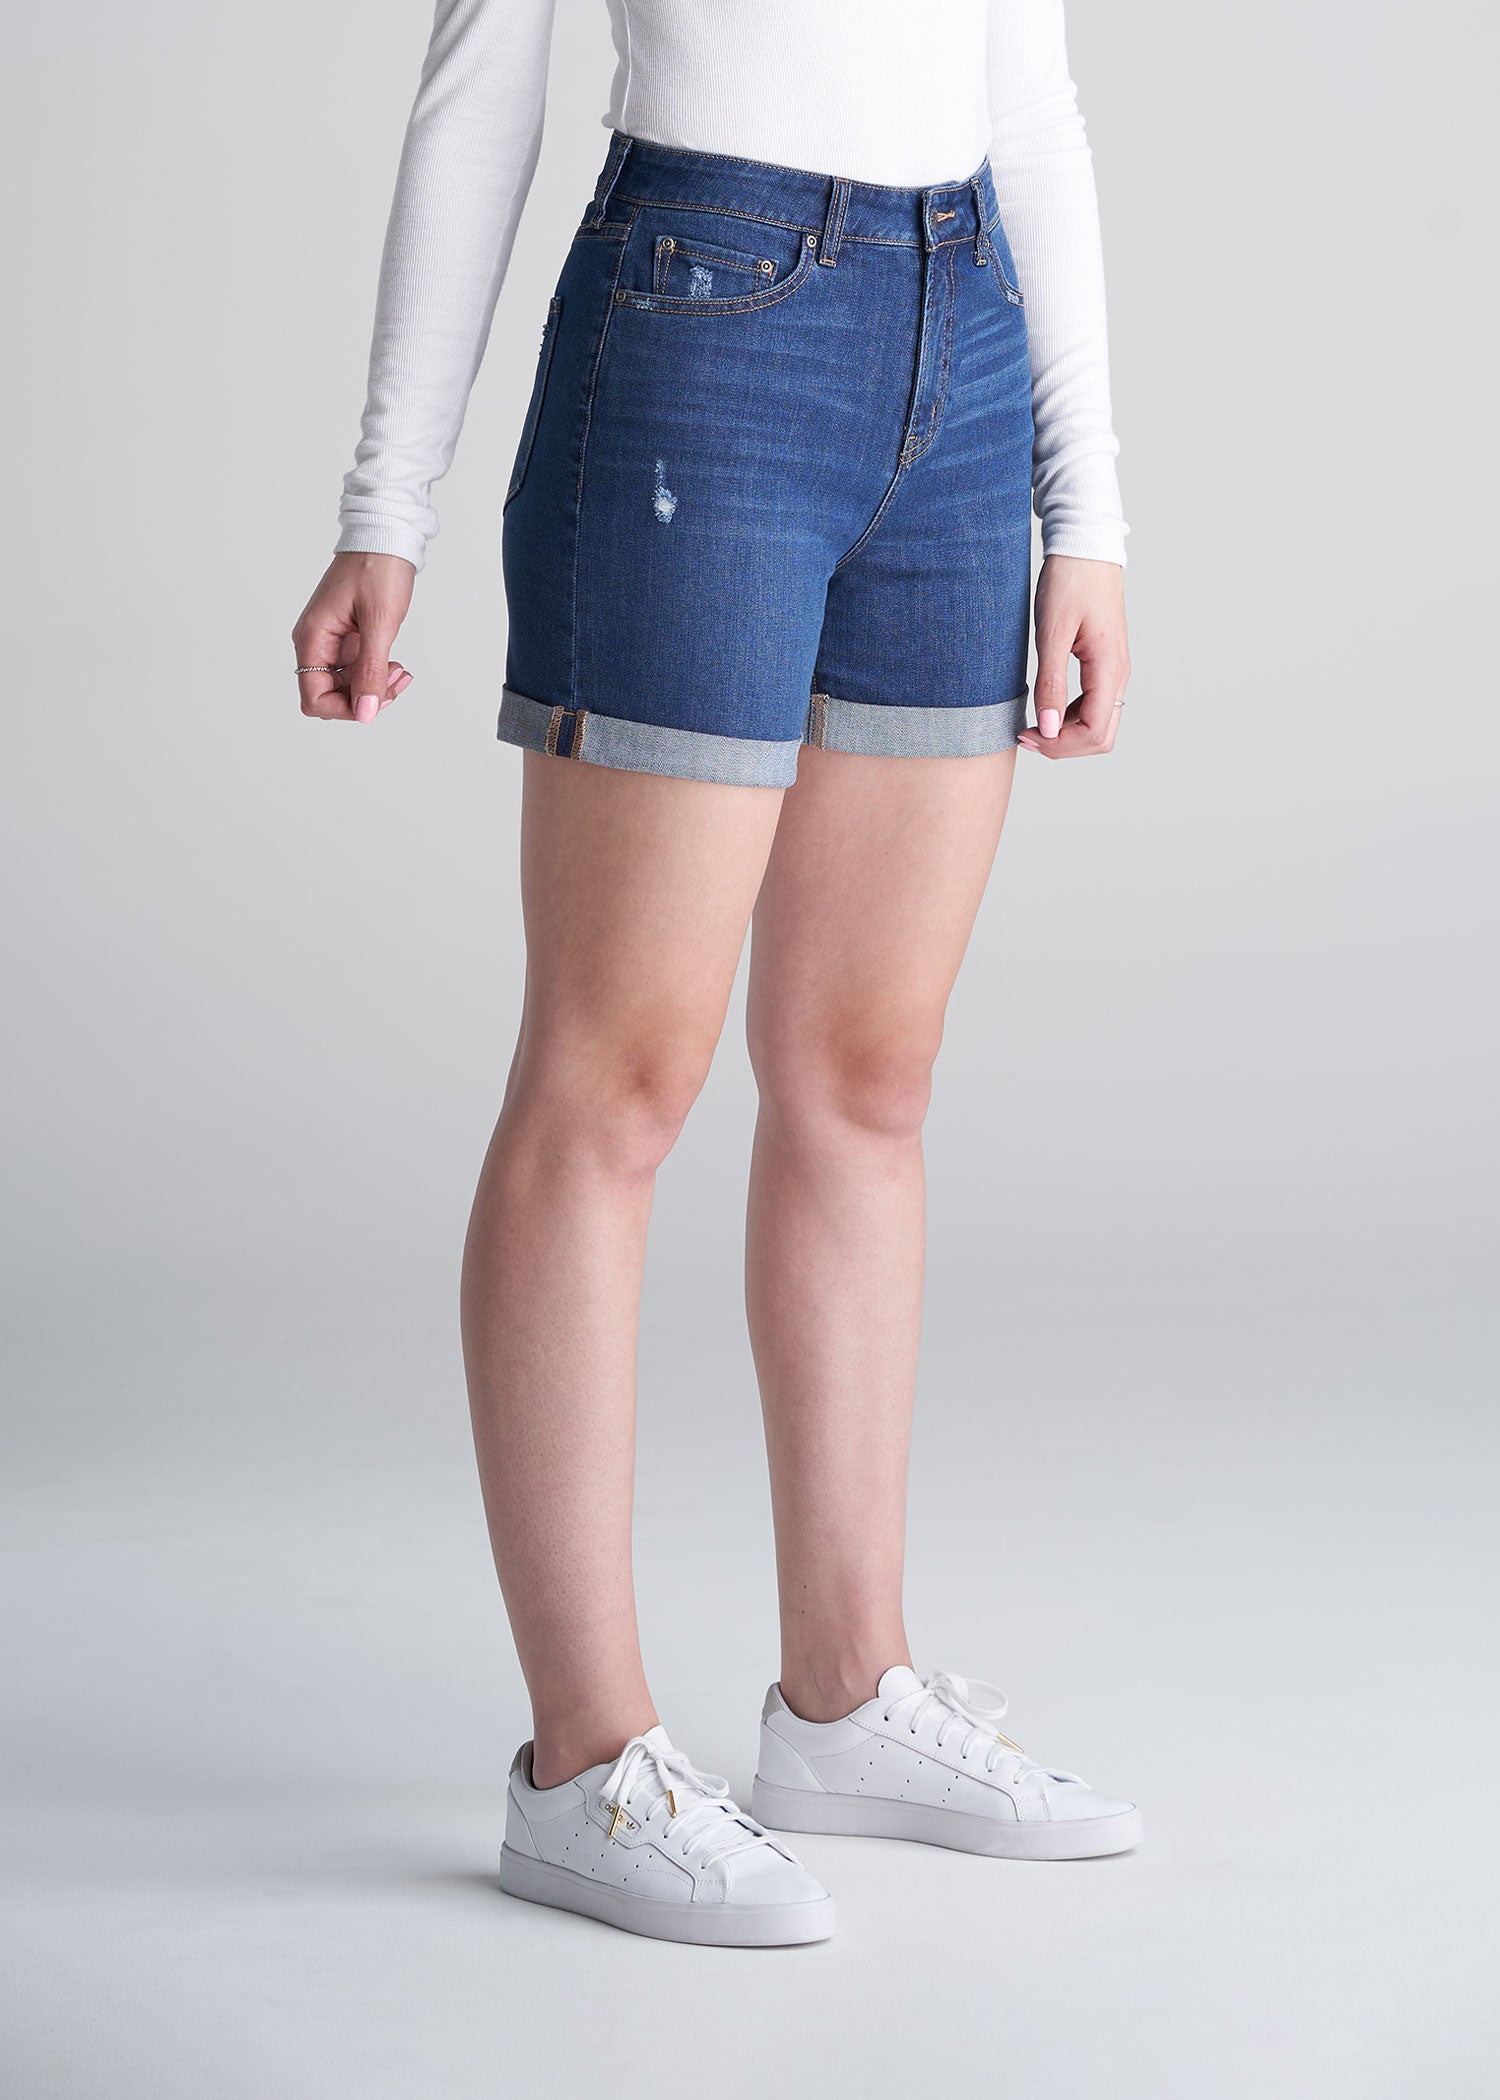 womens denim shorts